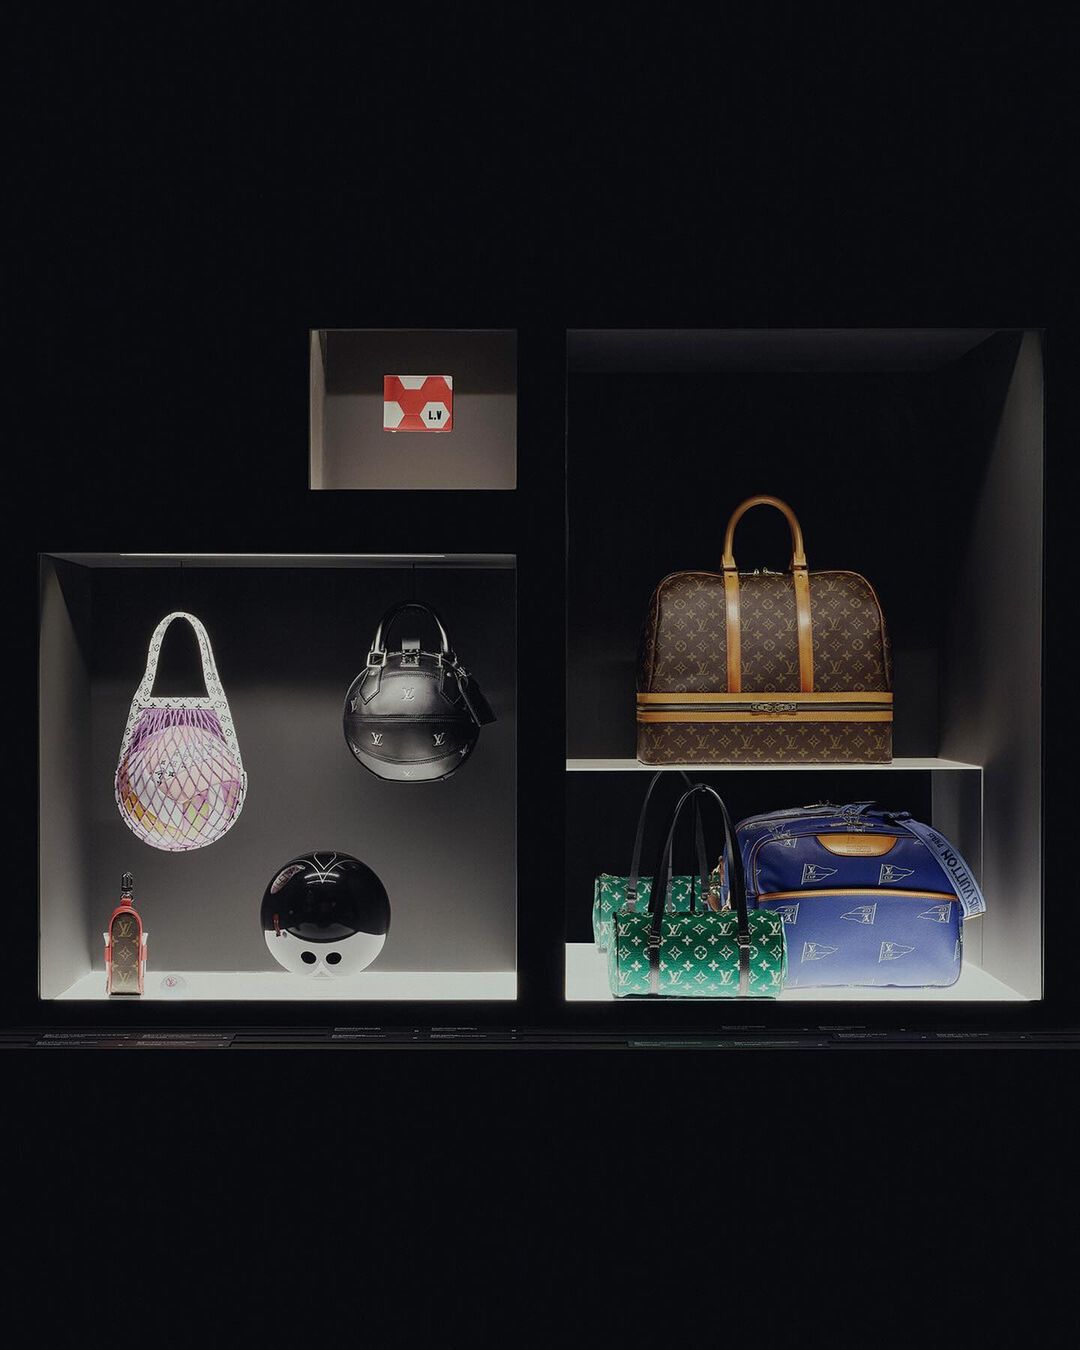 Louis Vuitton celebra a história com a exposição Malle Courier